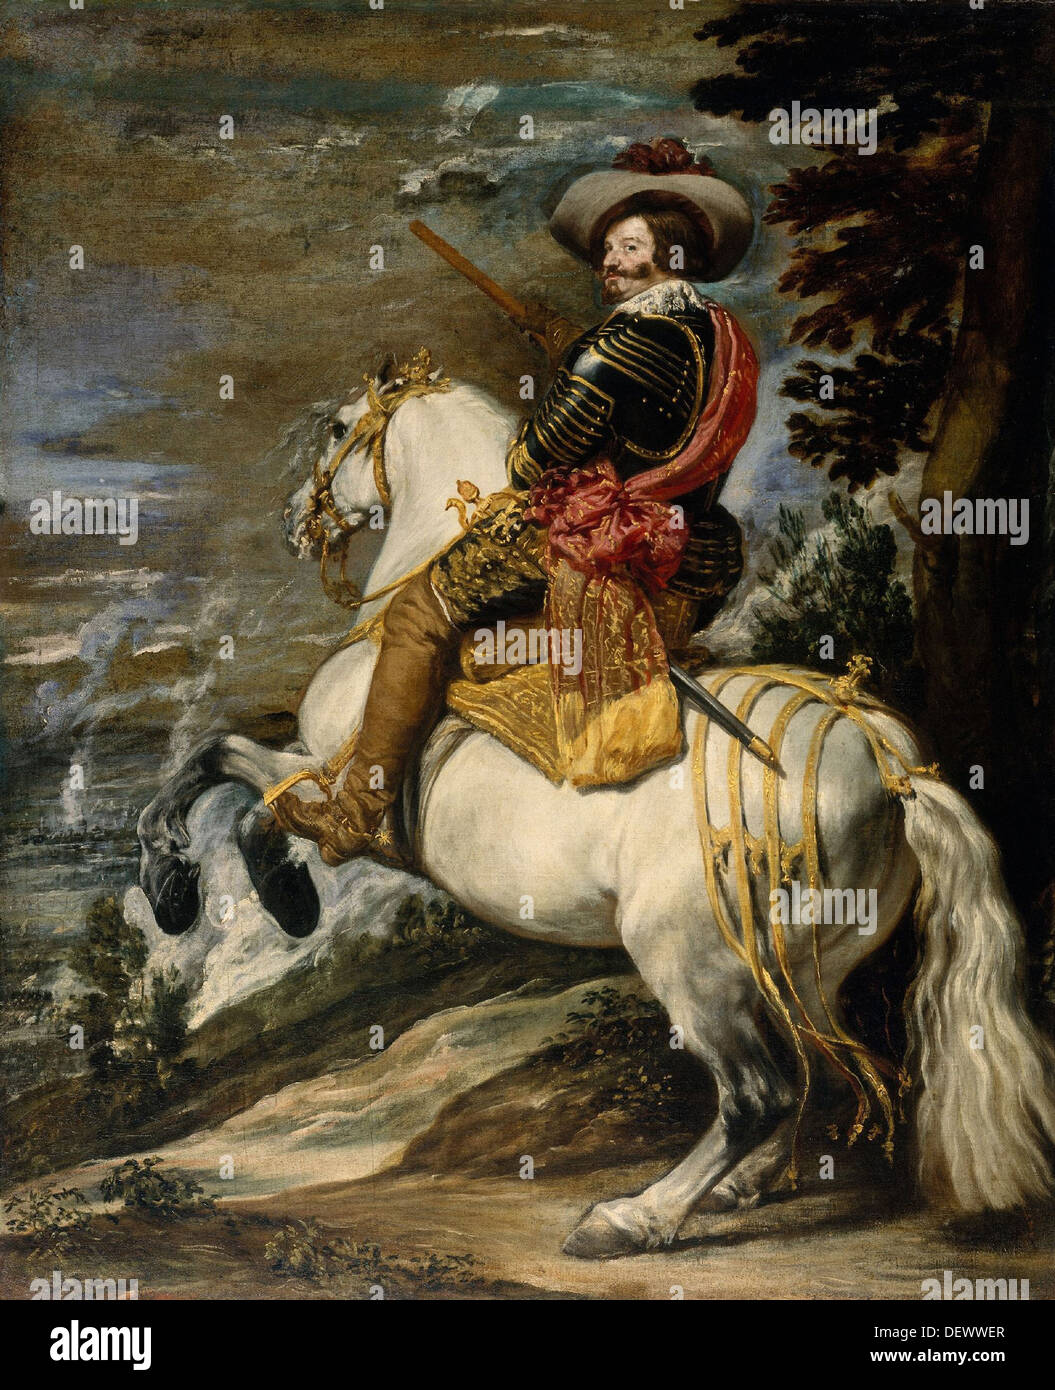 Diego Velazquez - Don Gaspar de Guzmán - 1635 - Metropolitan Museum of Art - New York Banque D'Images